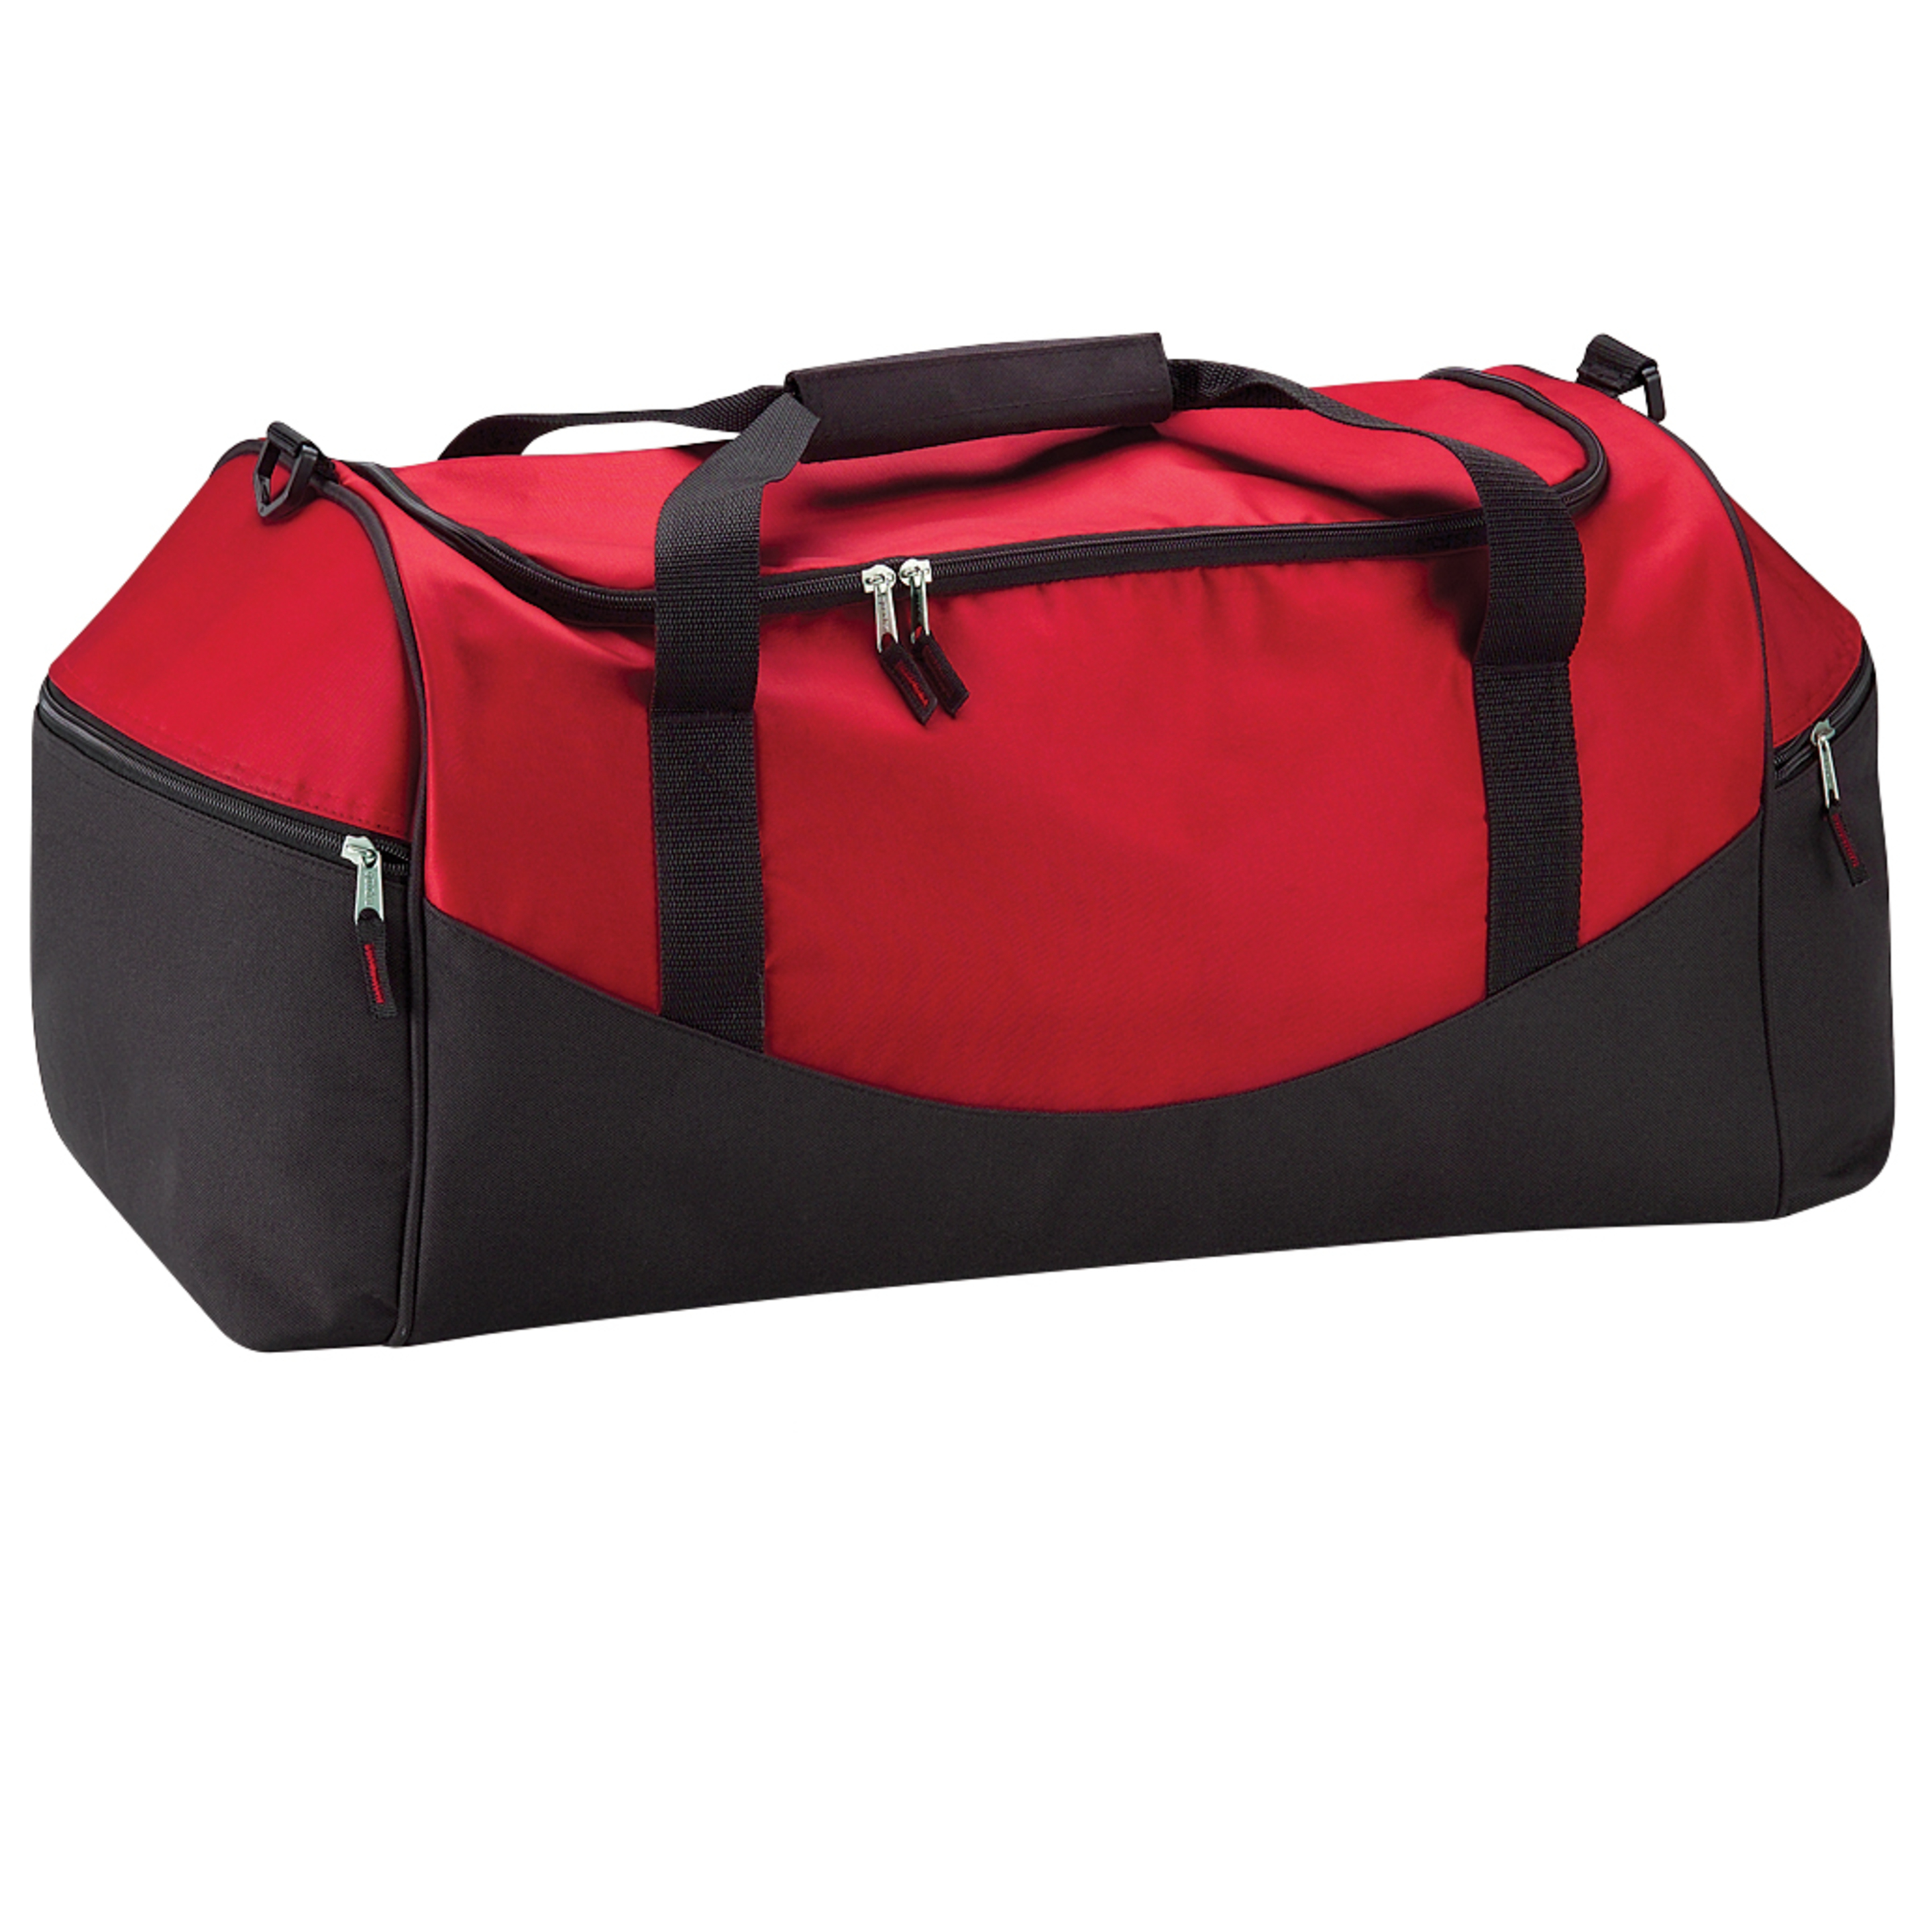 Bolsa De Deporte / Viaje Modelo Teamwear 55 Litros (Paquete De 2) Quadra (Rojo)